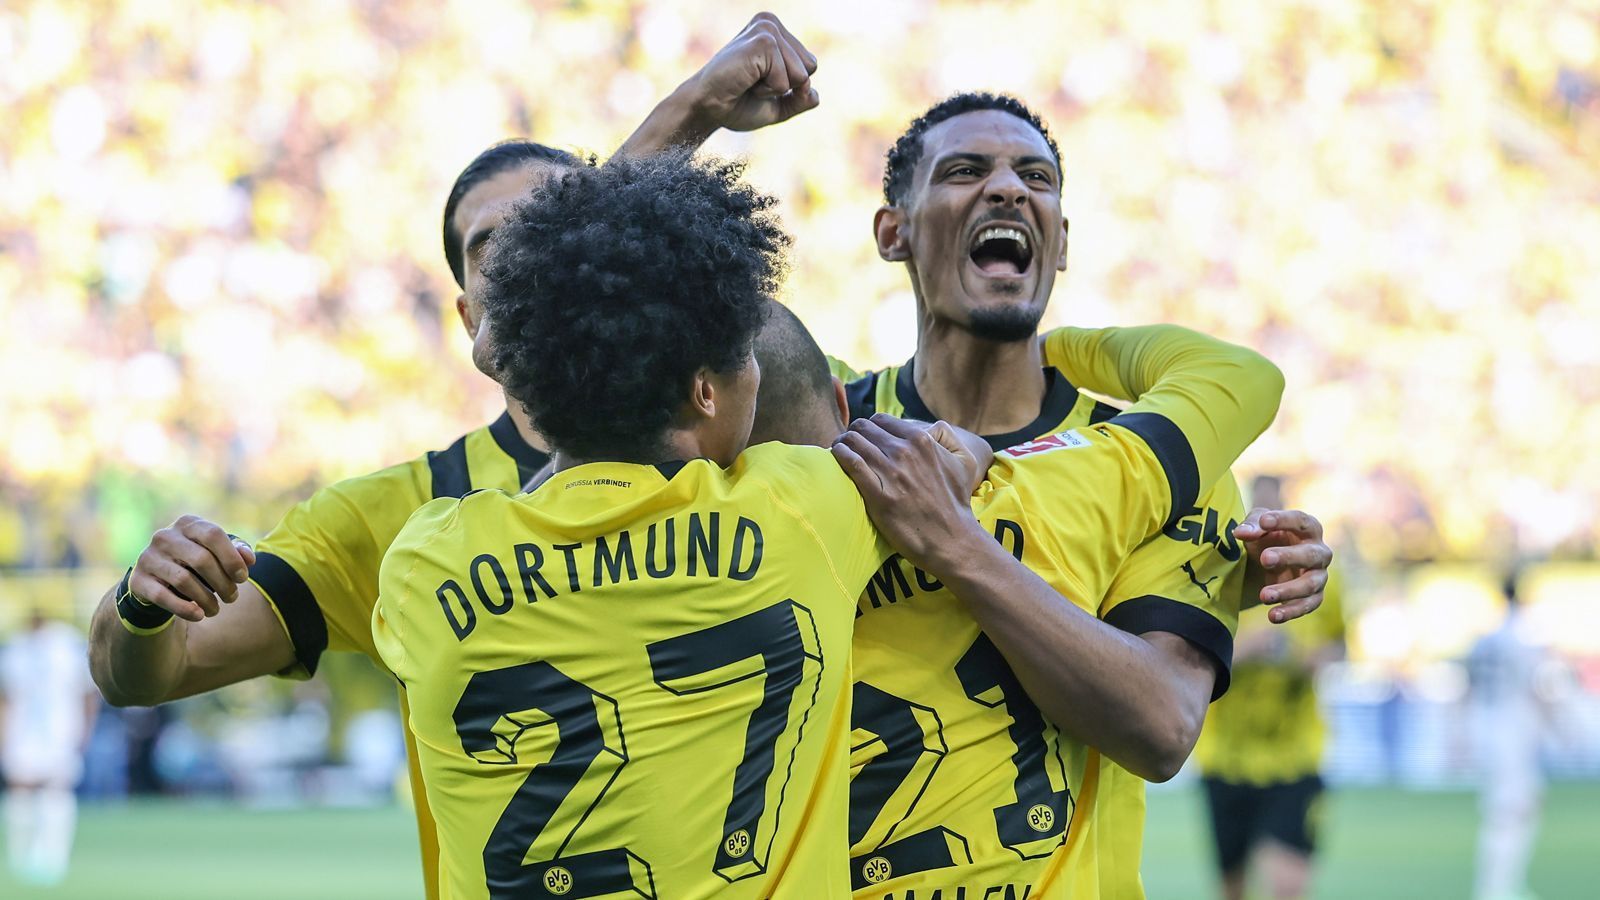 
                <strong>Berauschender BVB: Die Noten der Dortmunder Stars zum 5:2 gegen Gladbach</strong><br>
                Borussia Dortmund hat mit einem 5:2 gegen Borussia Mönchengladbach eine erfolgreiche Antwort auf das 6:0 der Bayern gegen Schalke gegeben. ran benotet die BVB-Stars im Borussen-Duell.
              